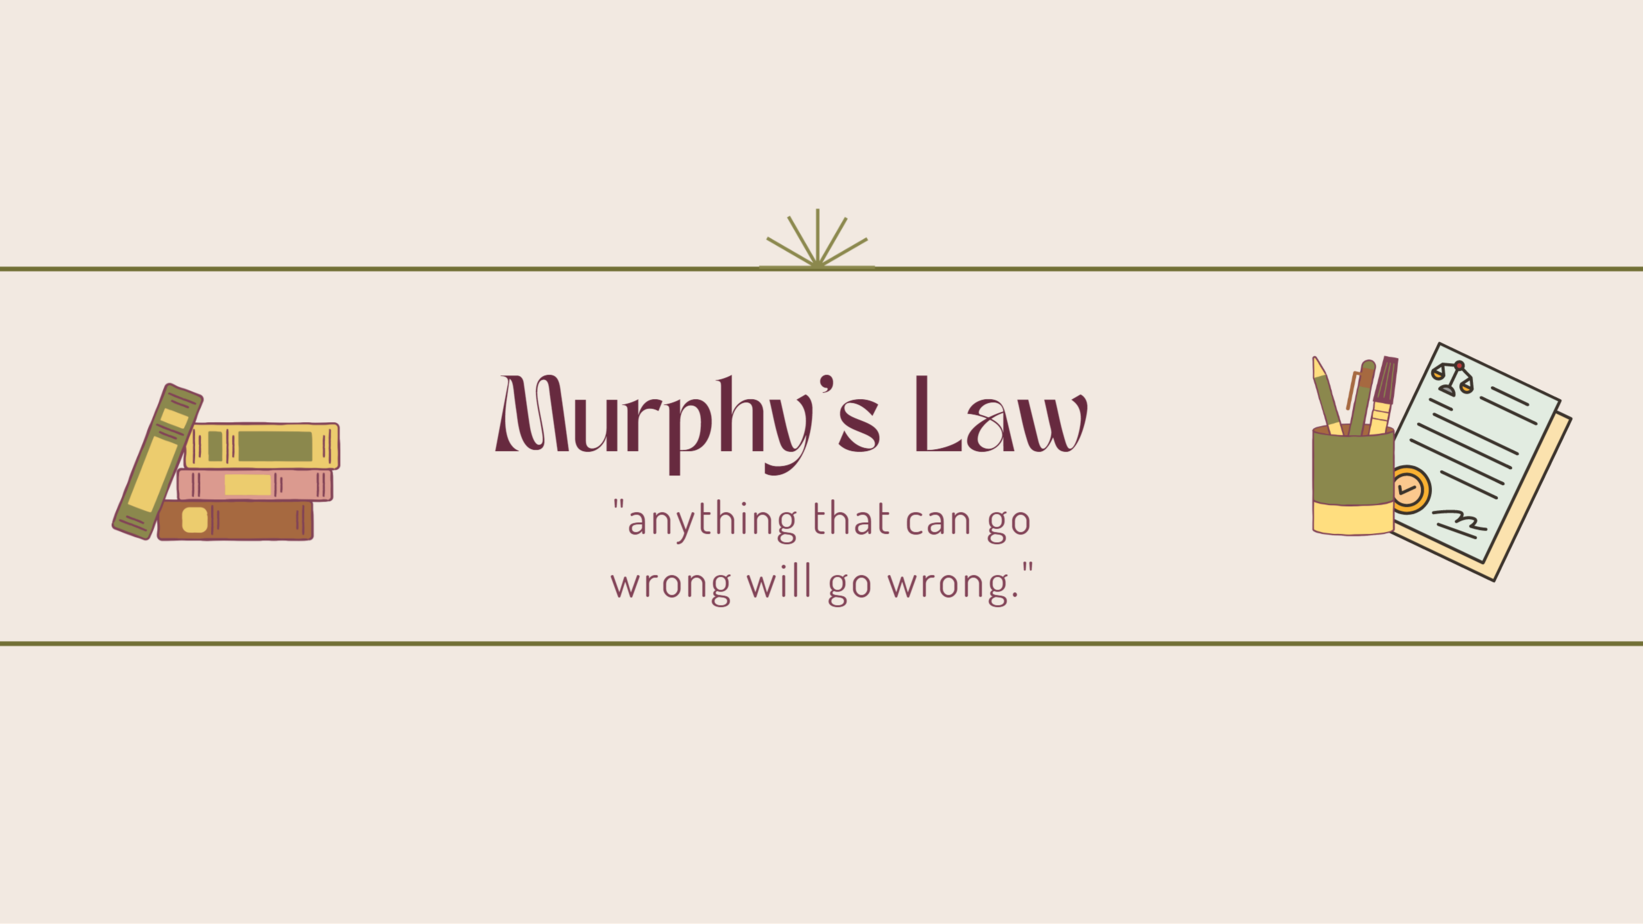 Murphys law meaning